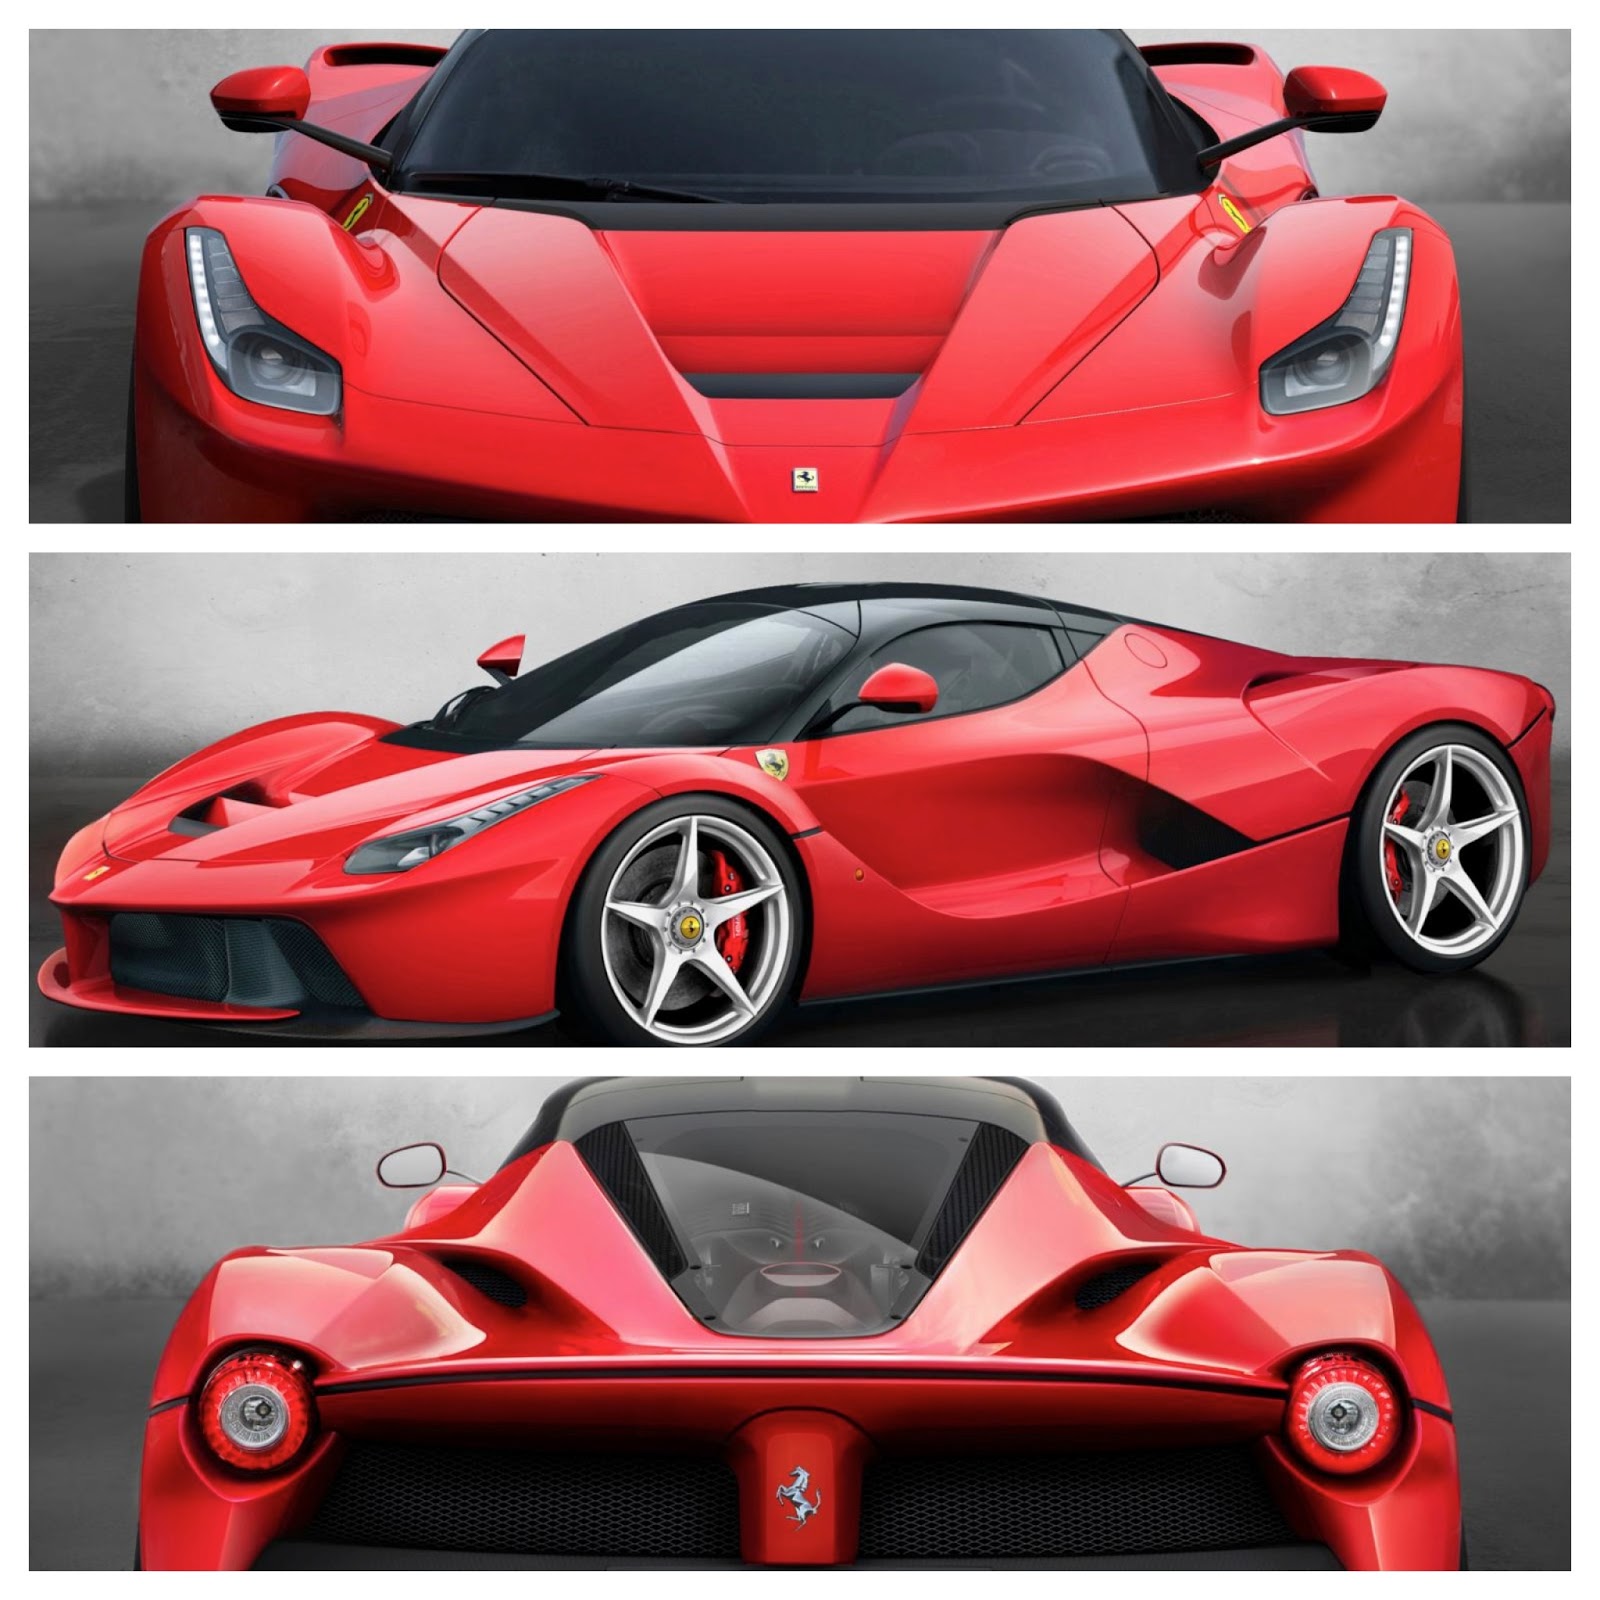 Ferrari LaFerrari: Why Ferrari Named Ferrari F70 as LaFerrari? - cars ...